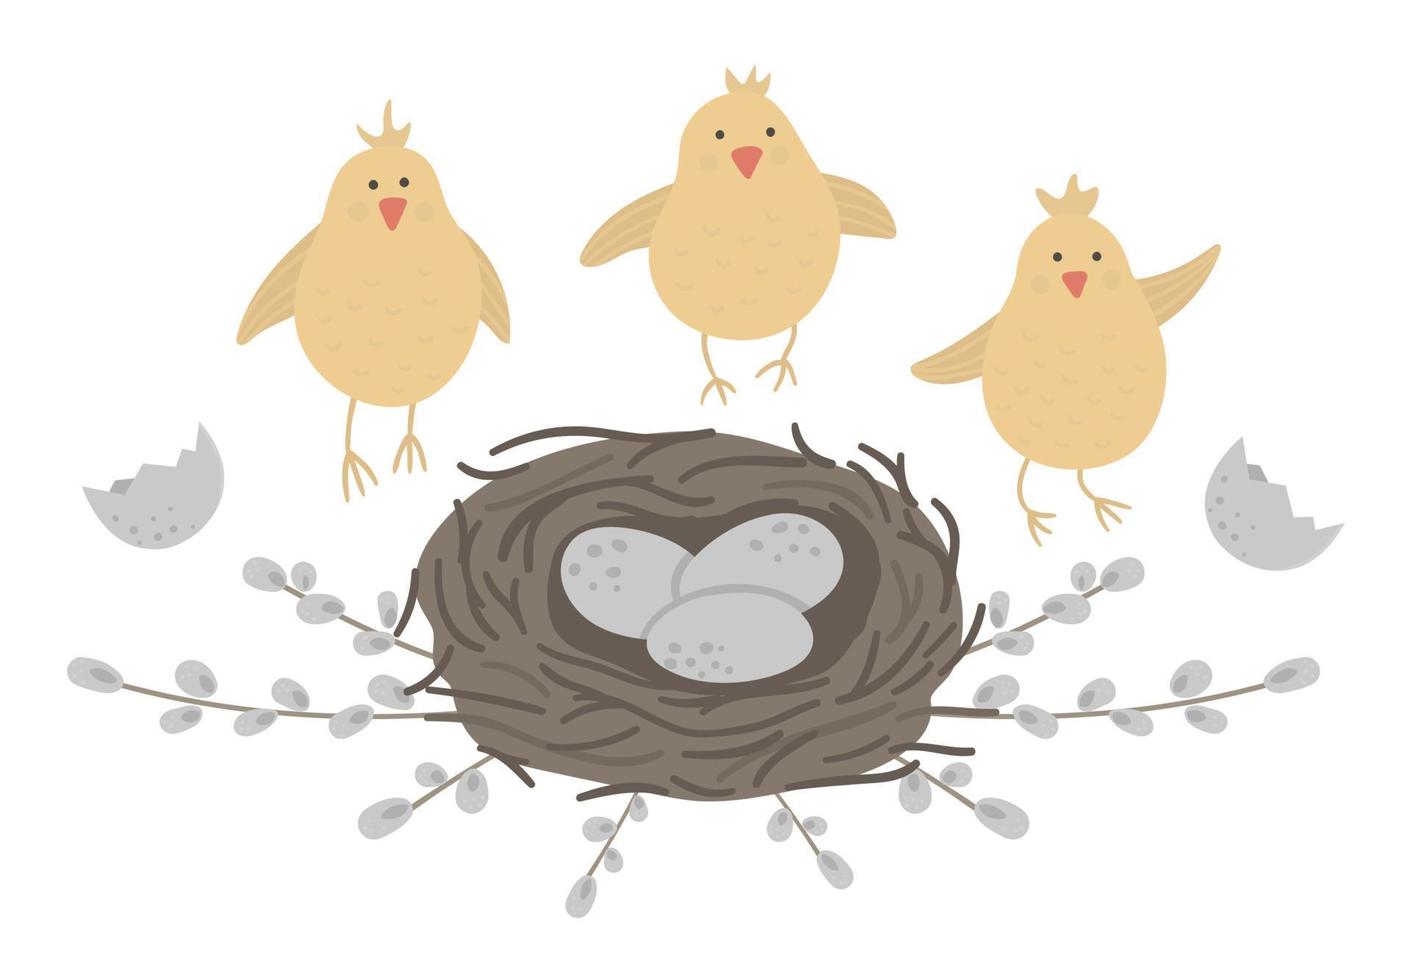 vector planas galinhas engraçadas com ovos no ninho emoldurado com ramos de salgueiro. ilustração de páscoa fofa. imagens de férias de primavera isoladas no fundo branco.